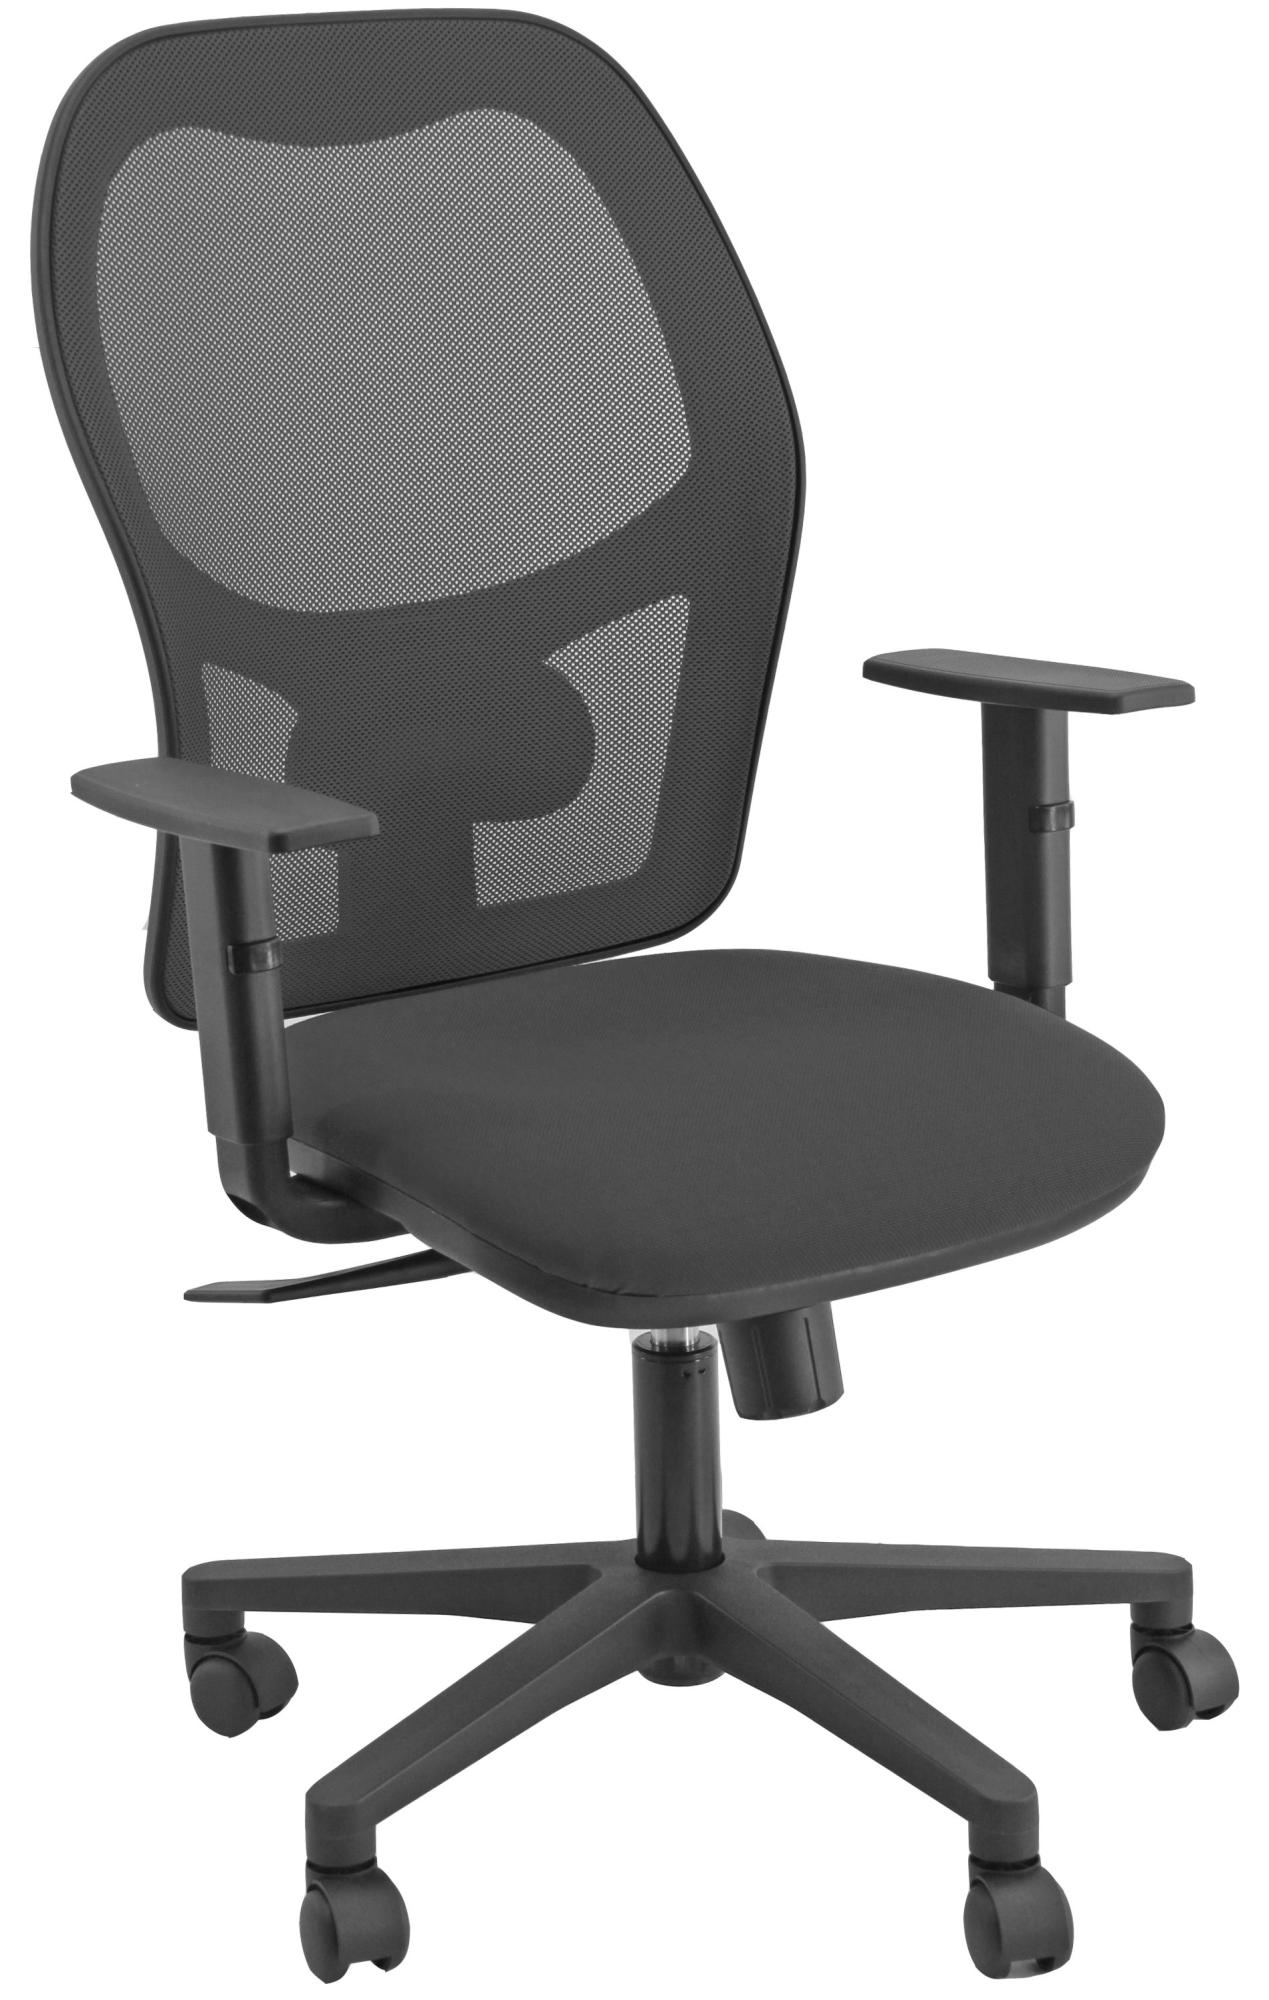 Silla de escritorio sincro hubble color negra con reposabrazos ajustables